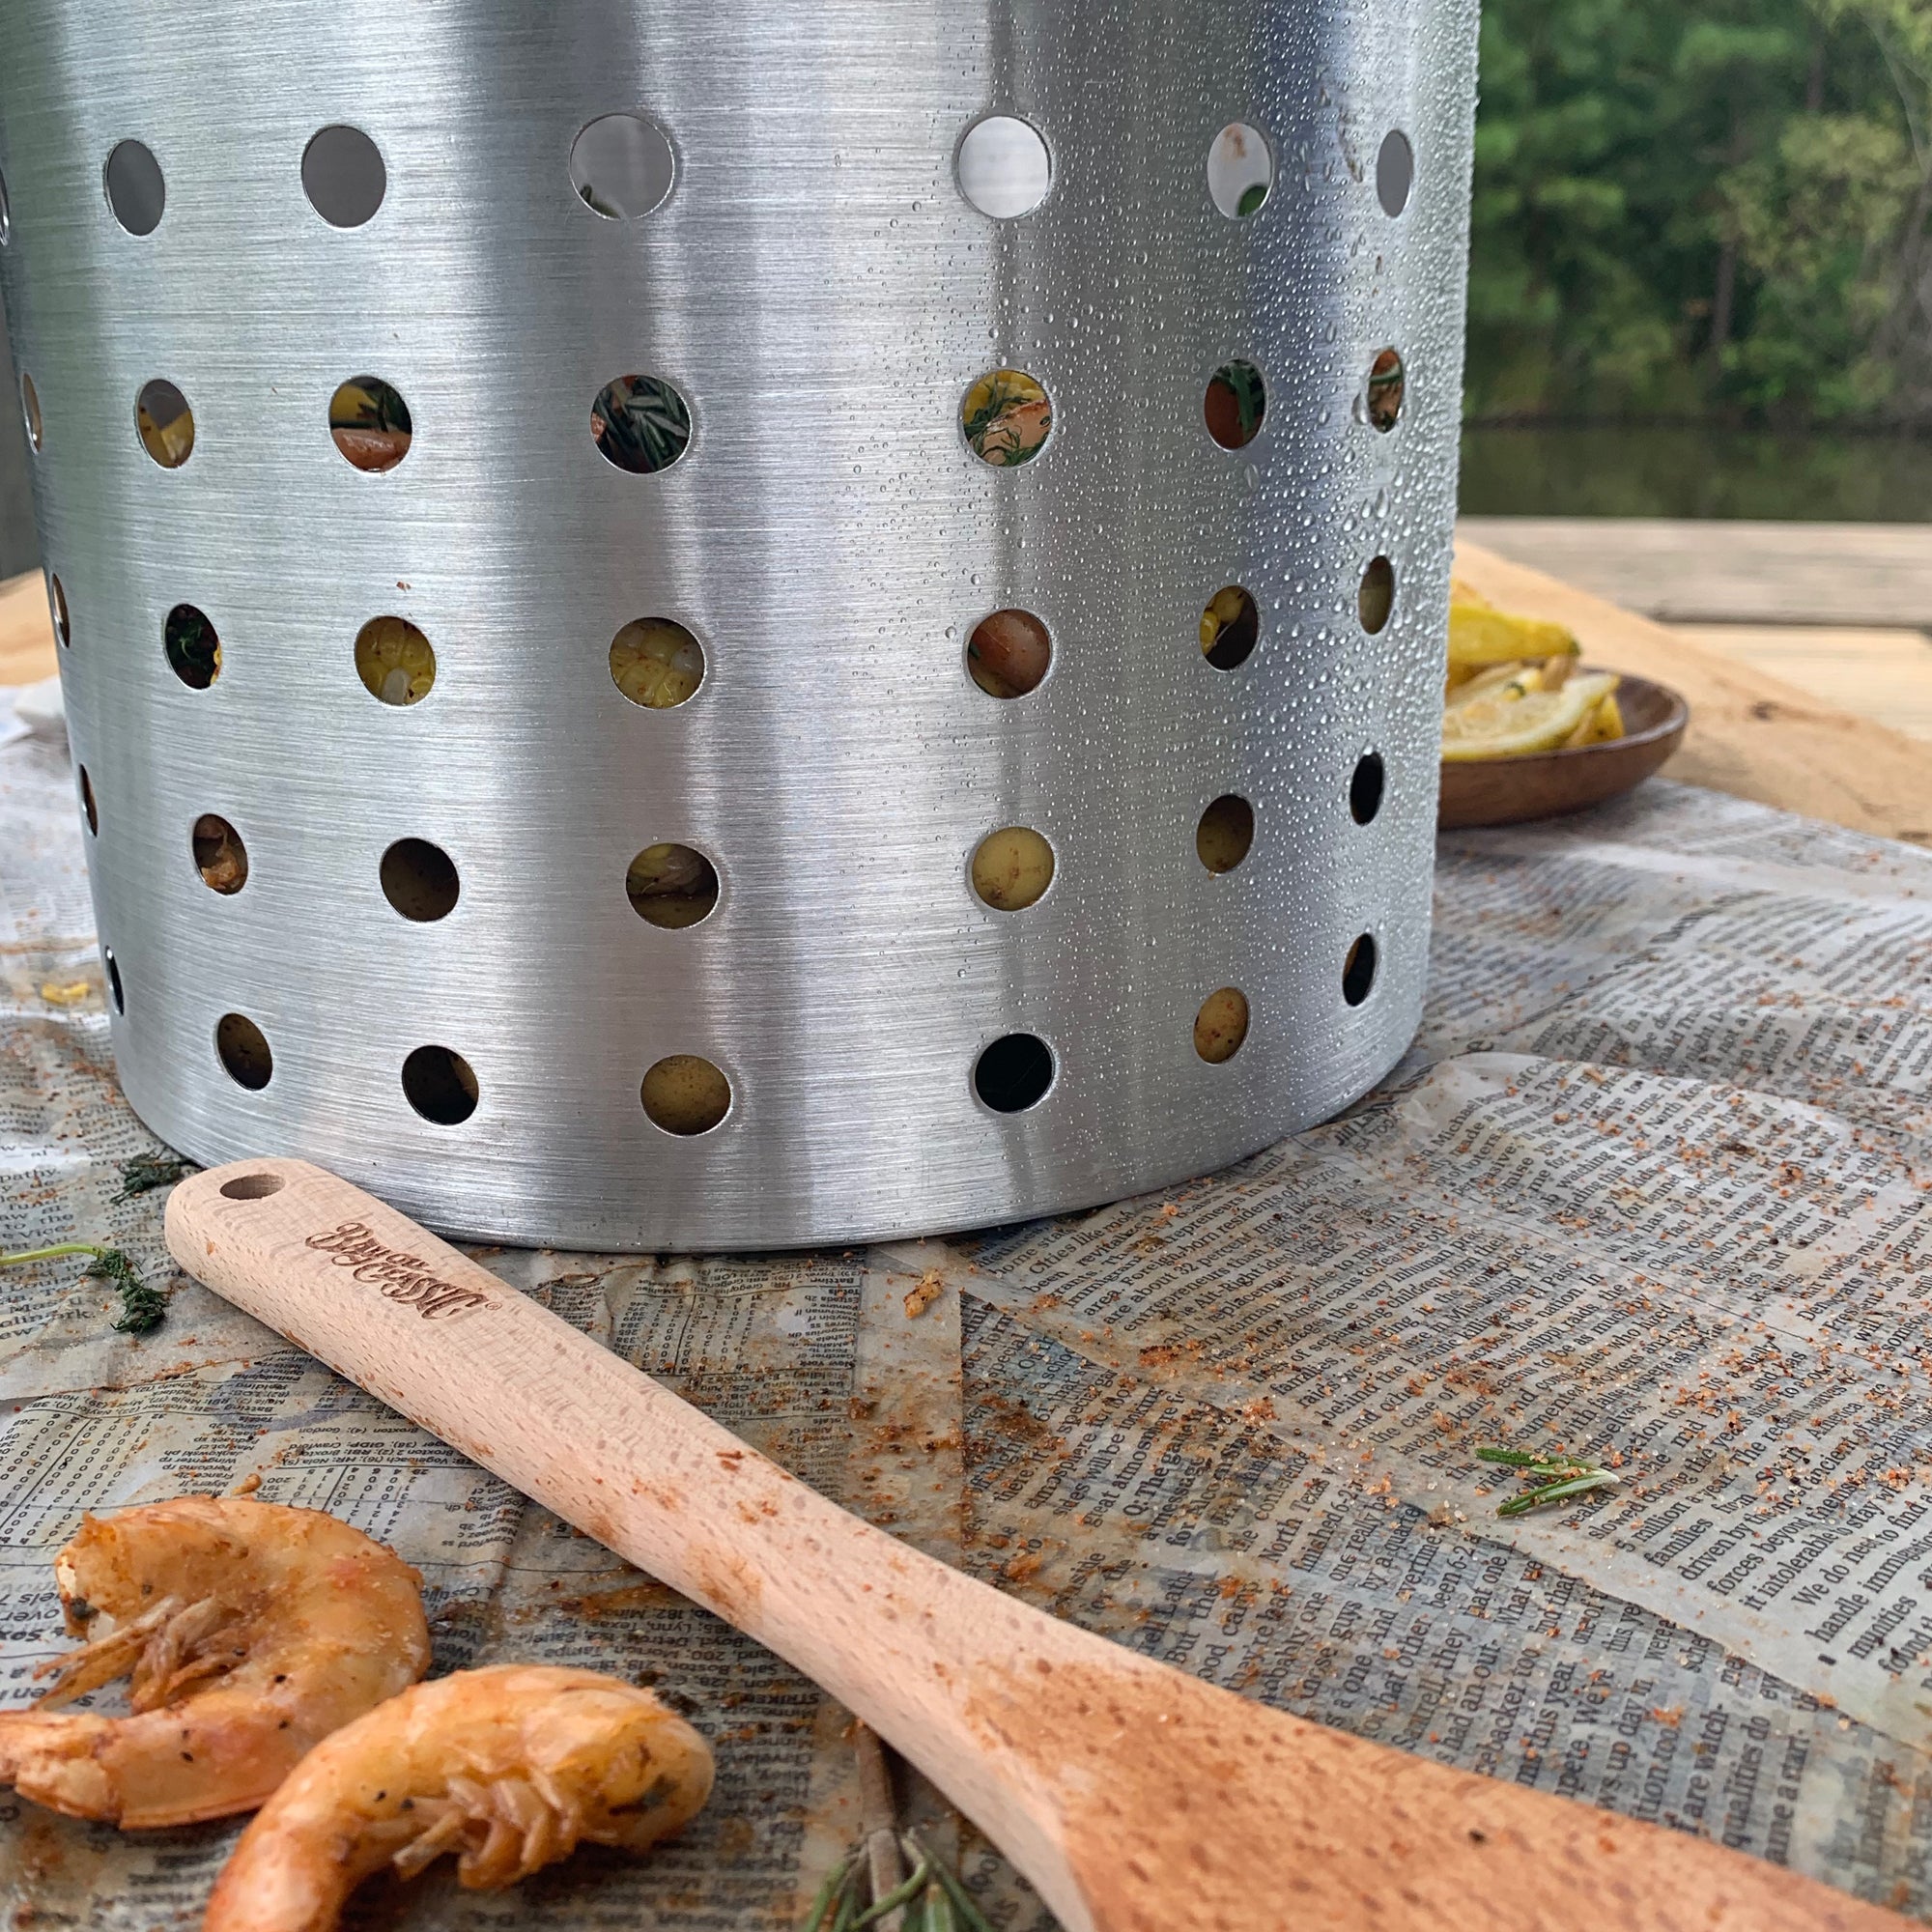 52 Quart Outdoor Turkey Fryer KIT Deep Steamer Food Boiler Pot